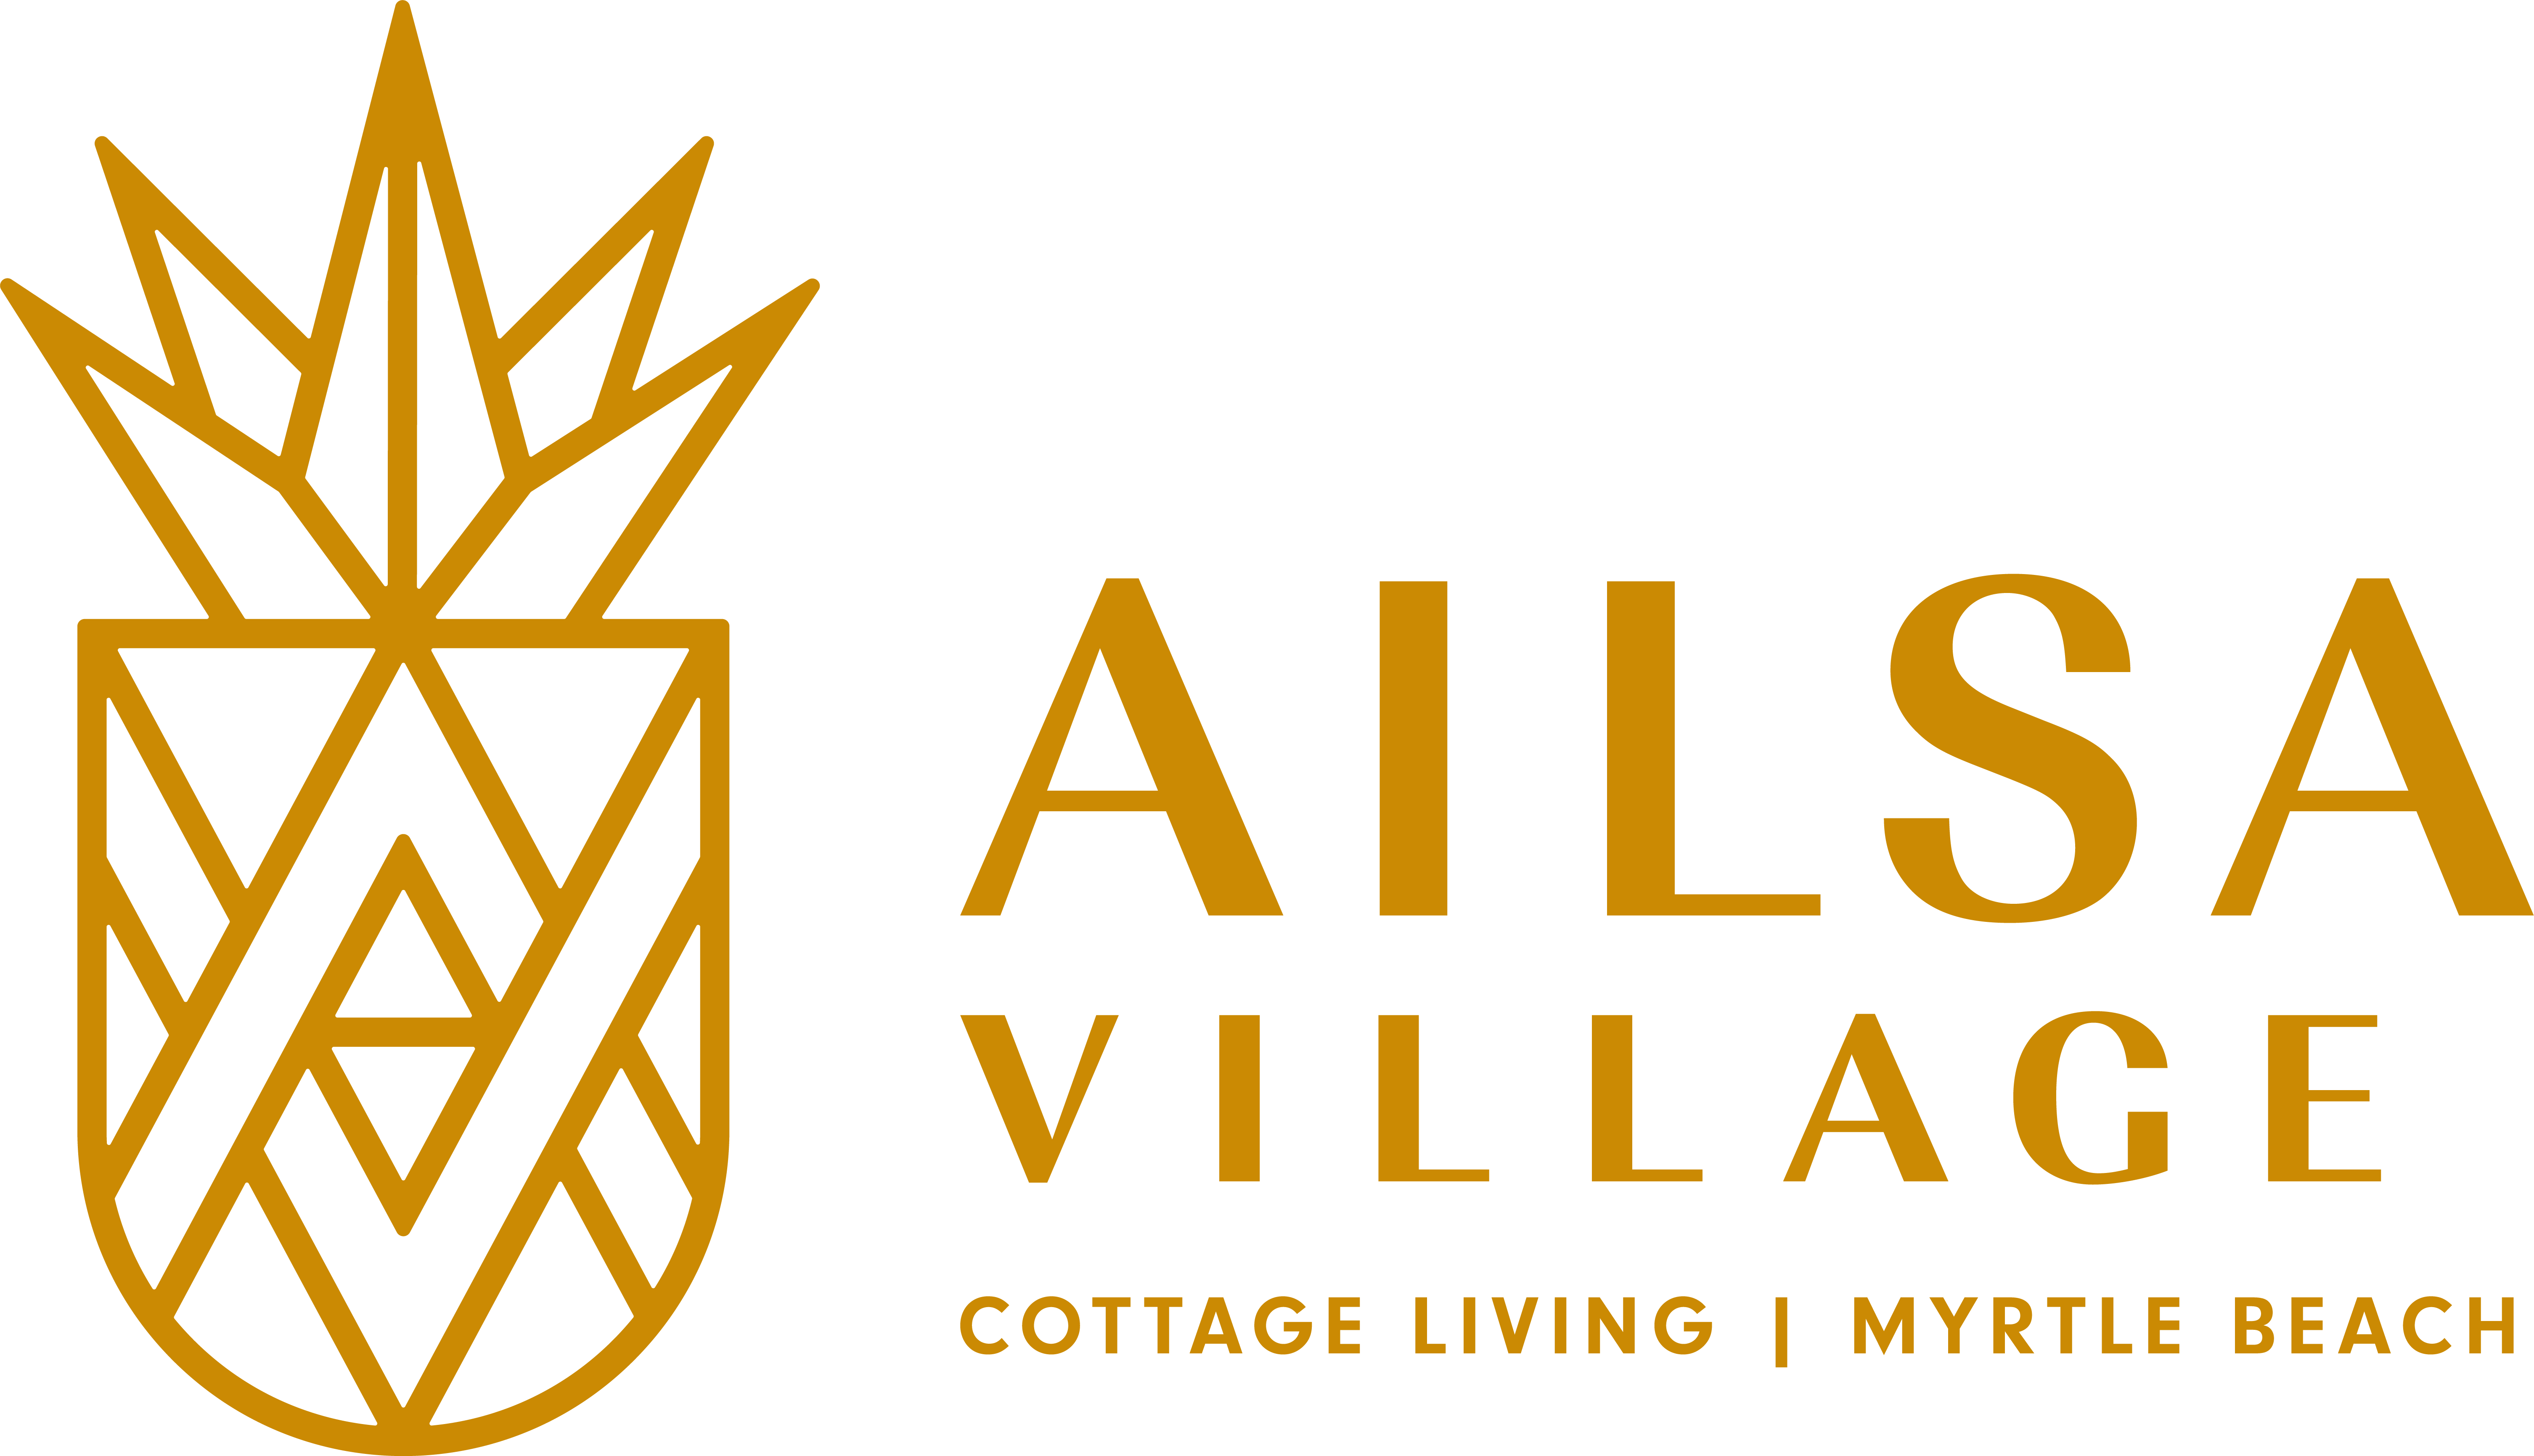 Ailsa Village